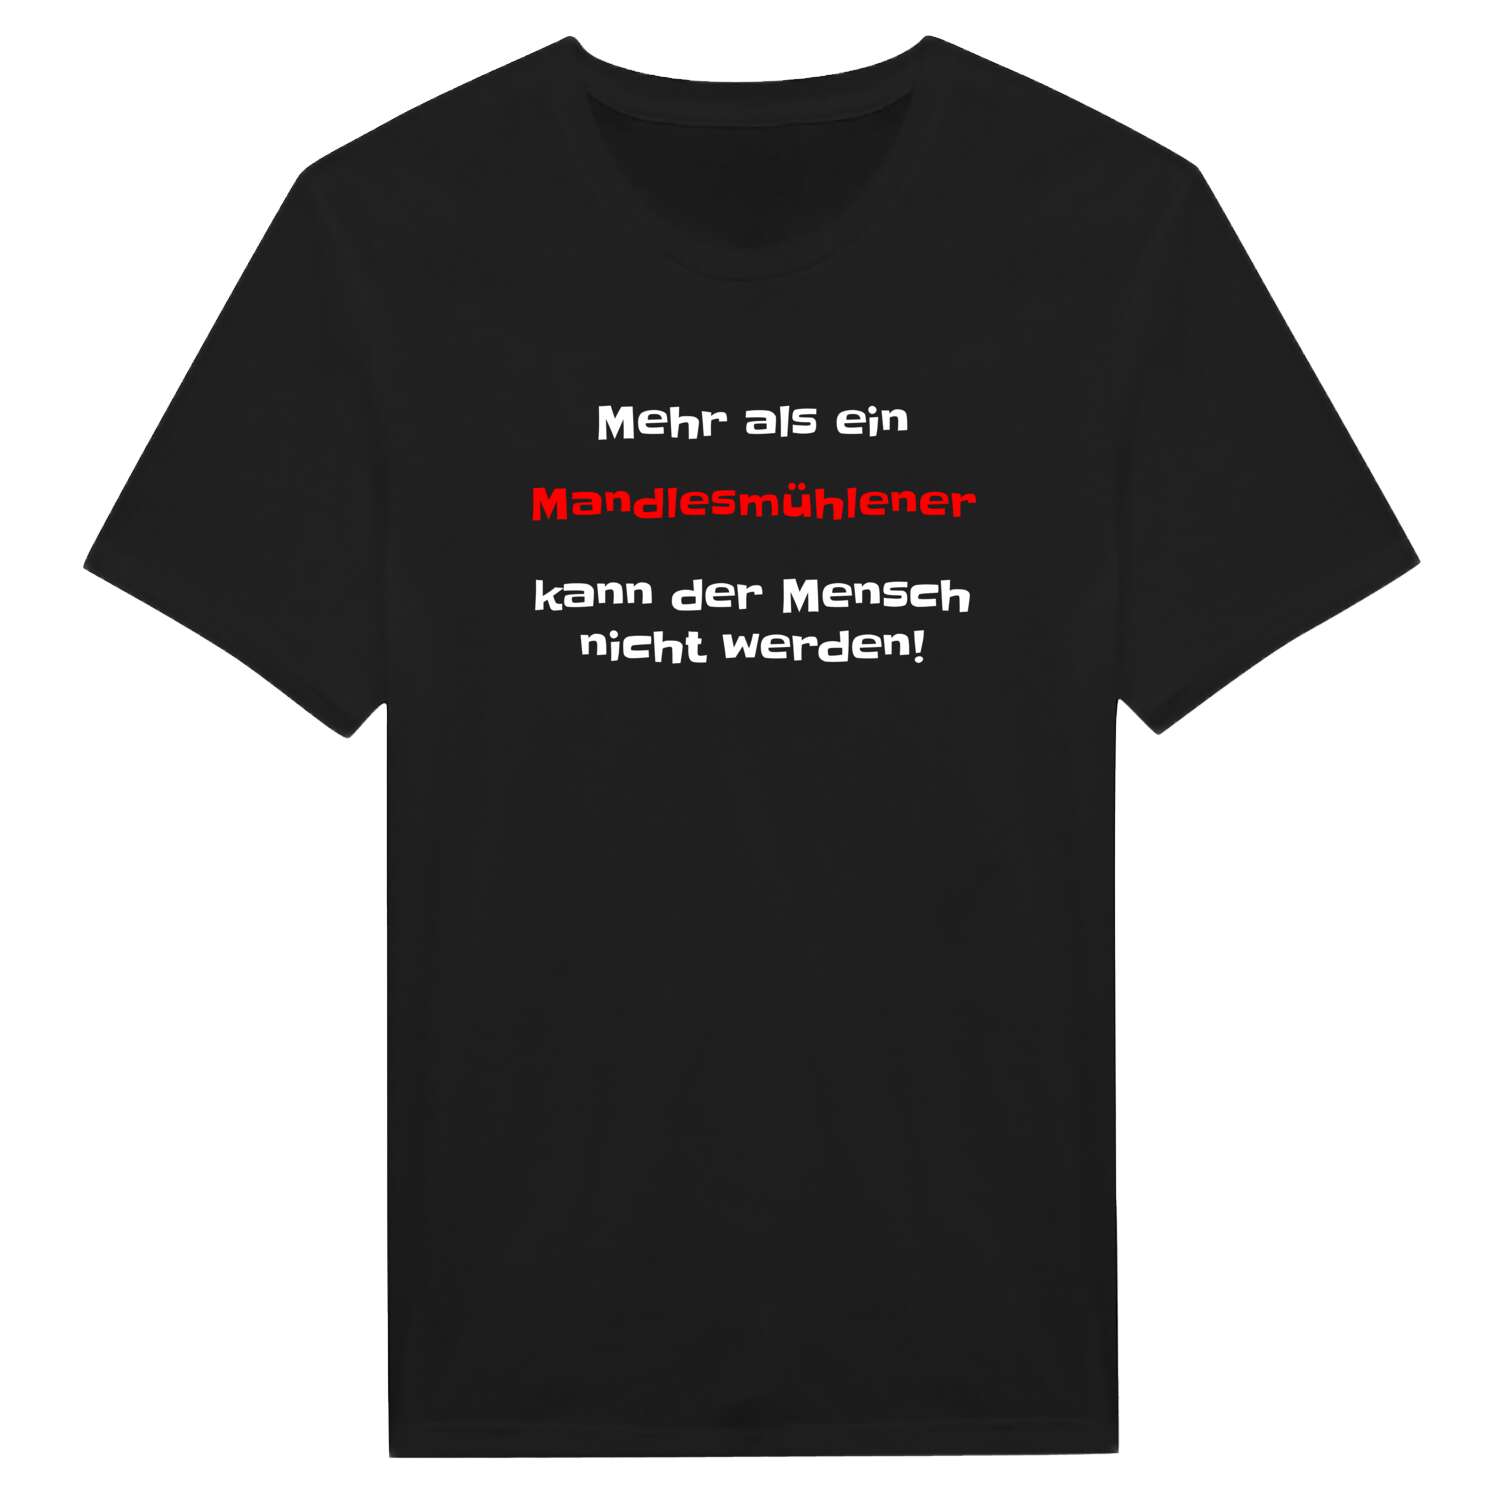 Mandlesmühle T-Shirt »Mehr als ein«